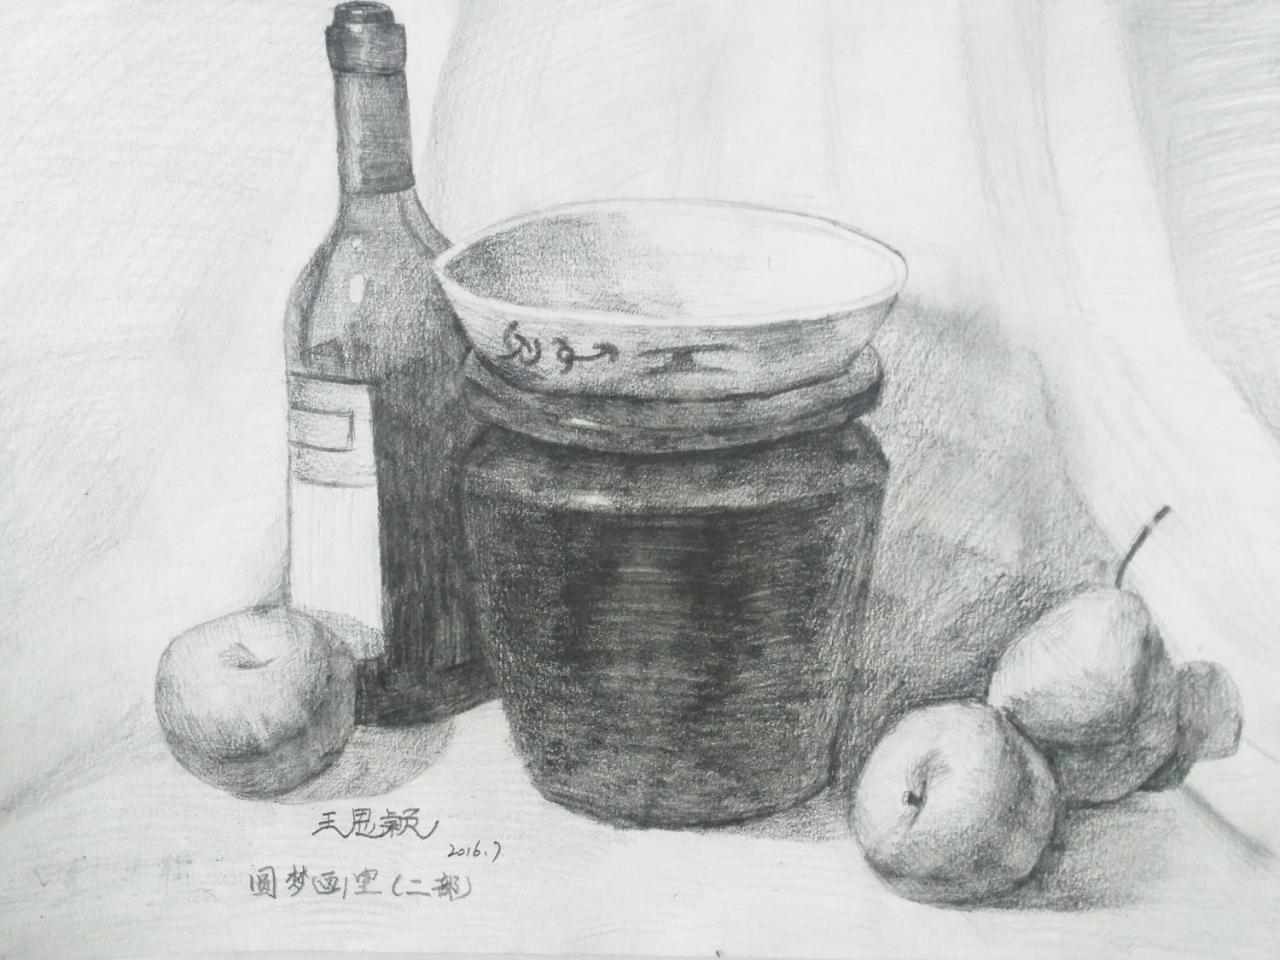 酒瓶、陶罐、碗、苹果、梨 静物素描 王思颖画